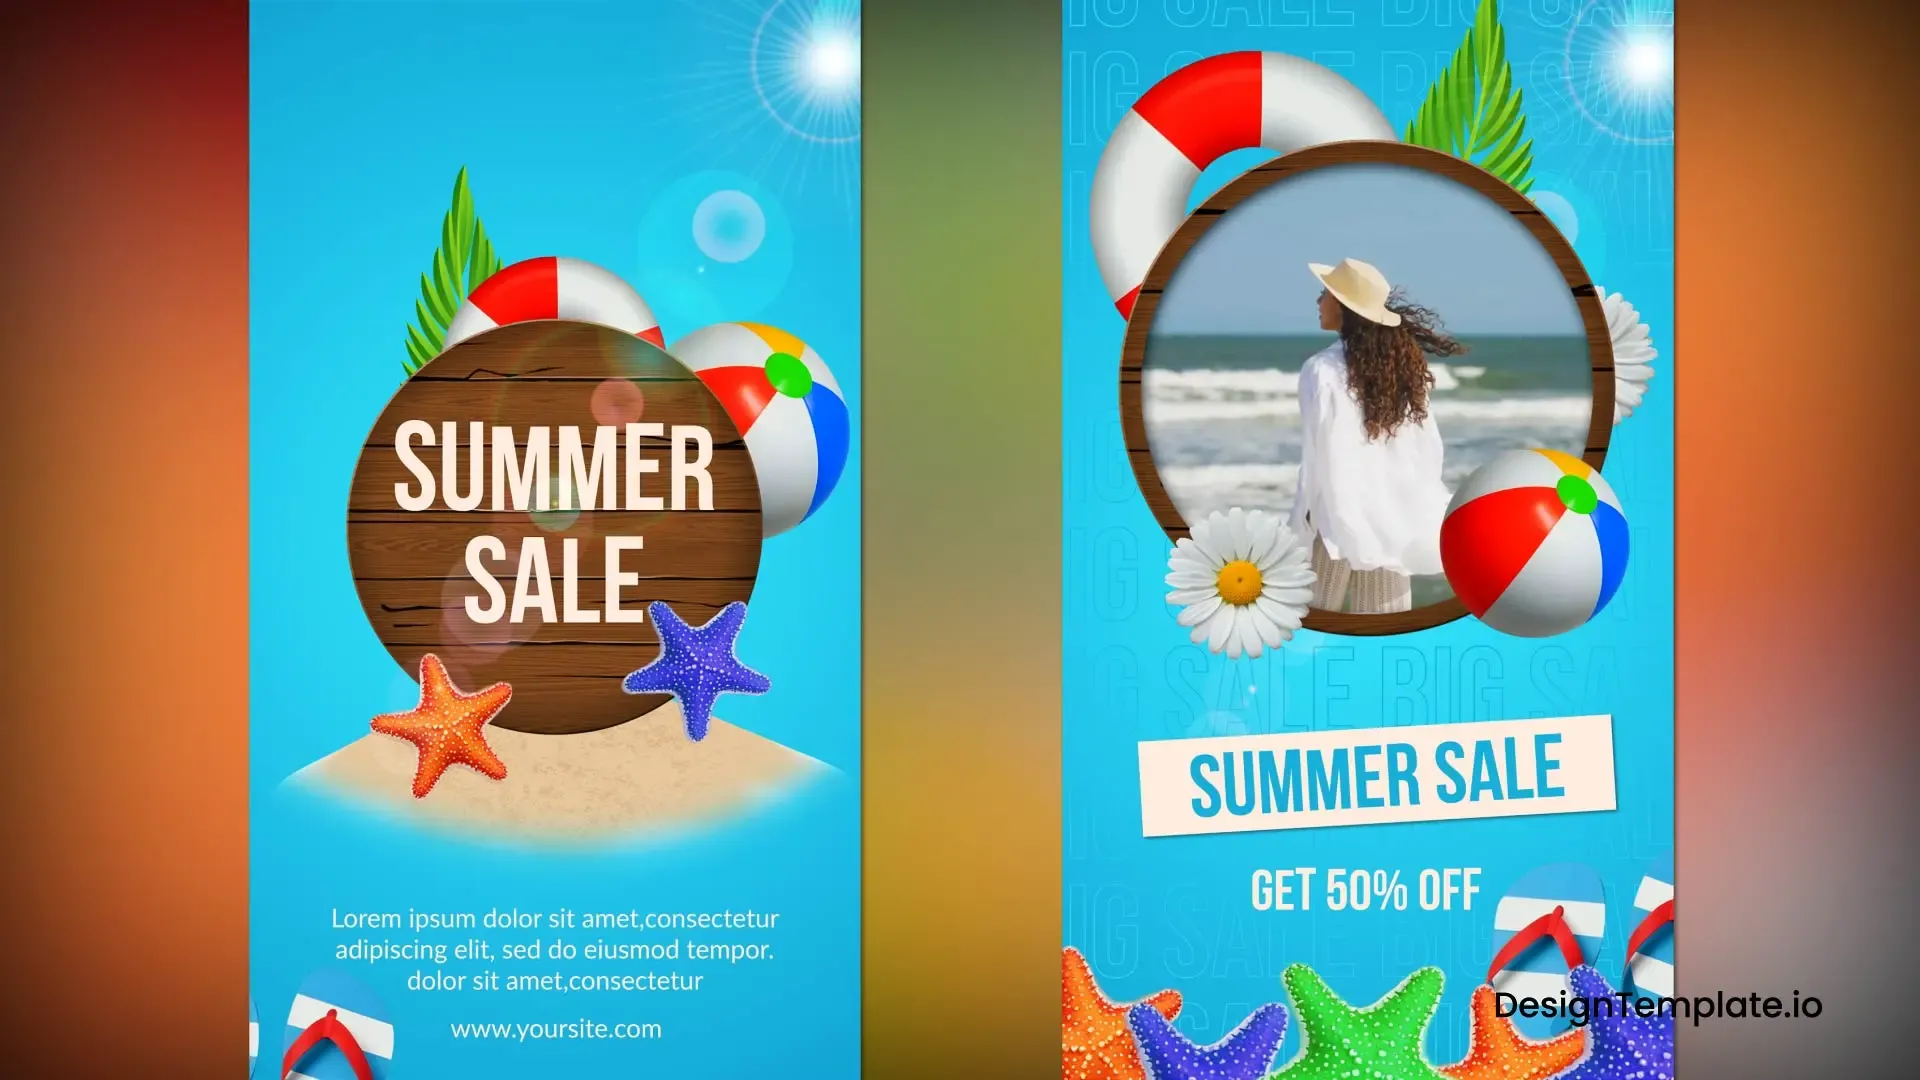 Instagram Reel for Summer Sale Promotions